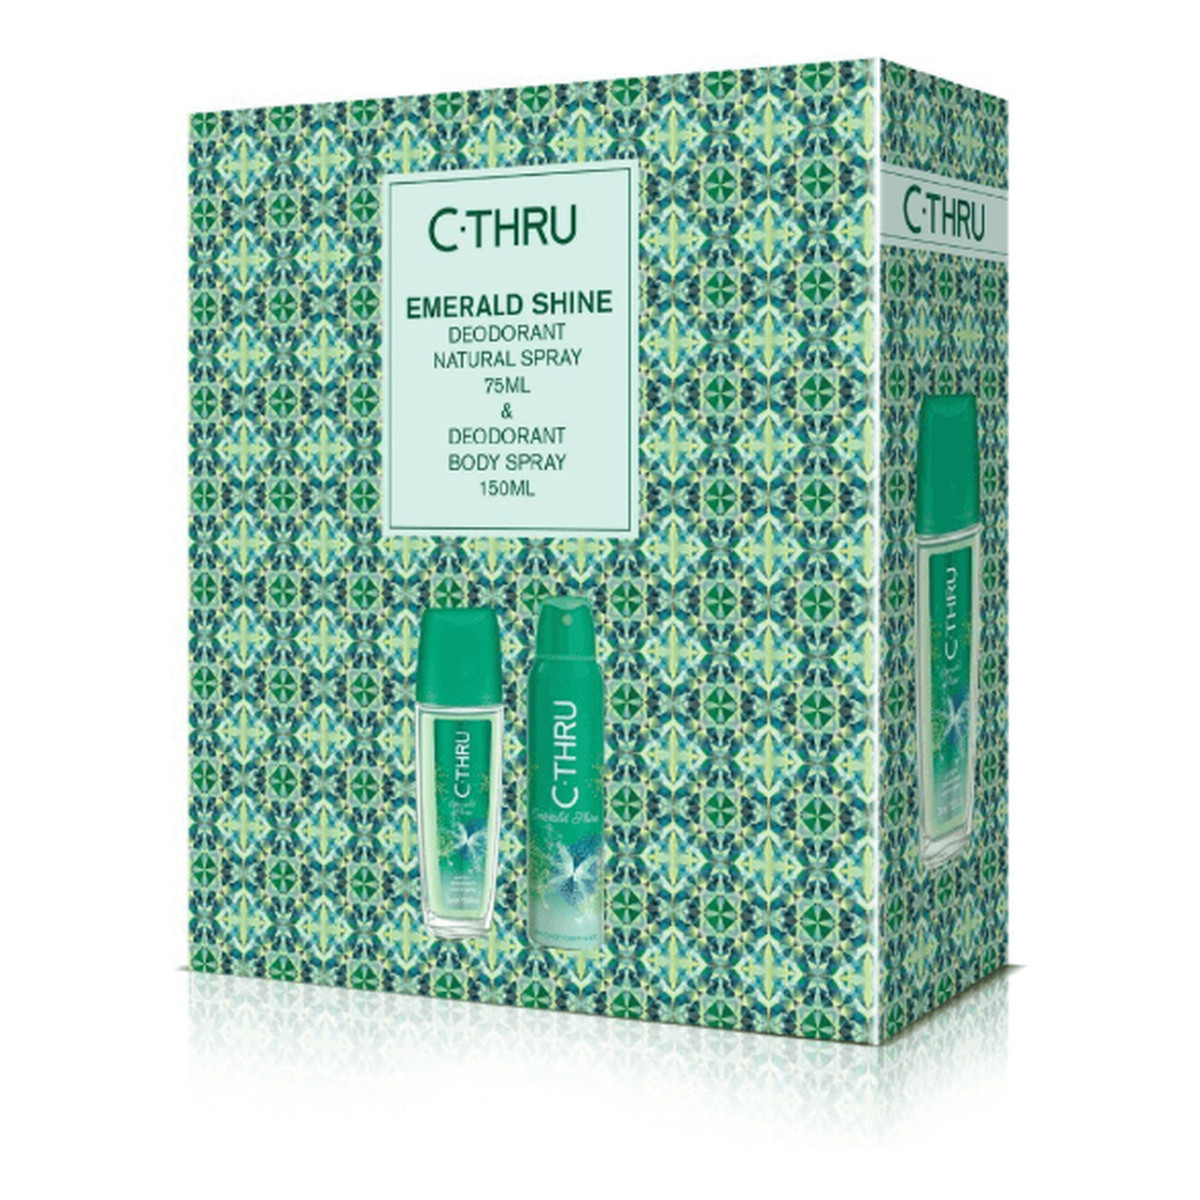 C-Thru Zestaw prezentowy Emerald Shine (Deo spray 150 ml + Dezodorant 75ml)